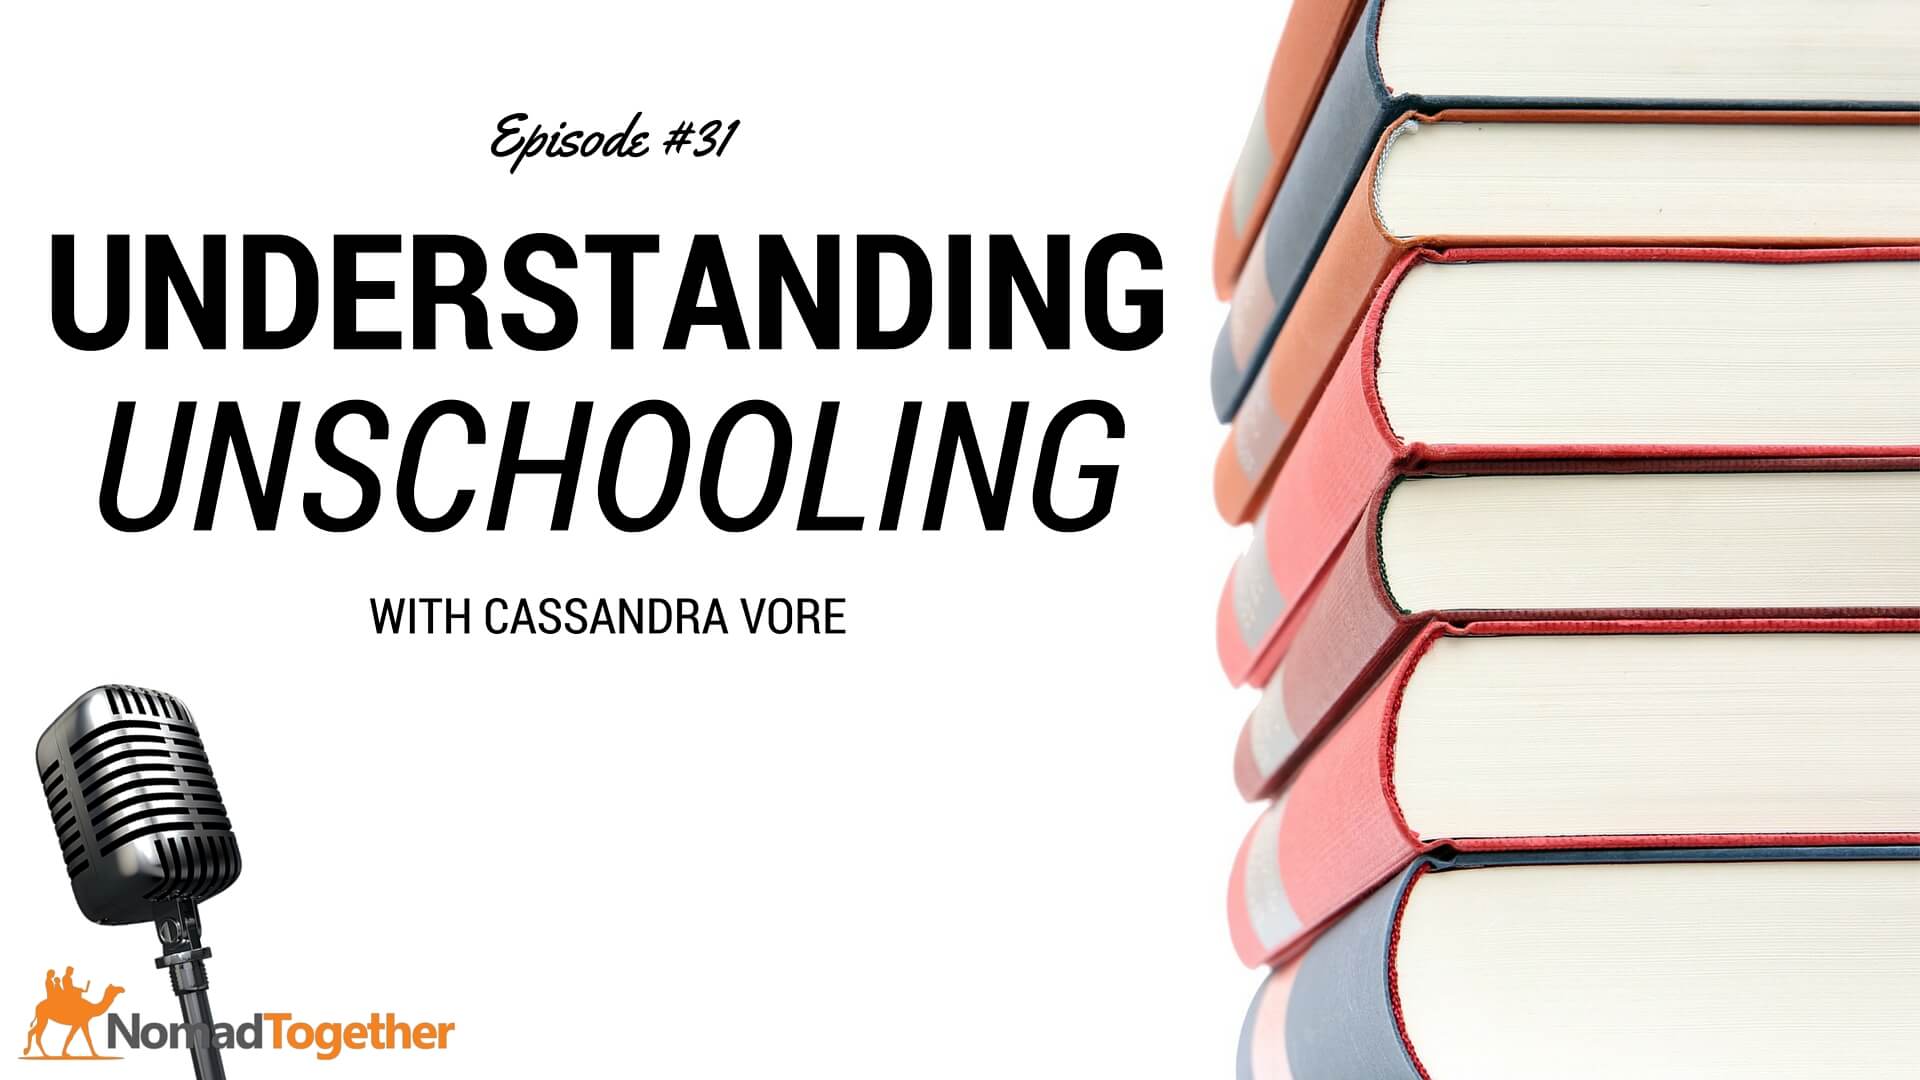 Episode #31: Understanding Unschooling with Cassandra Vore